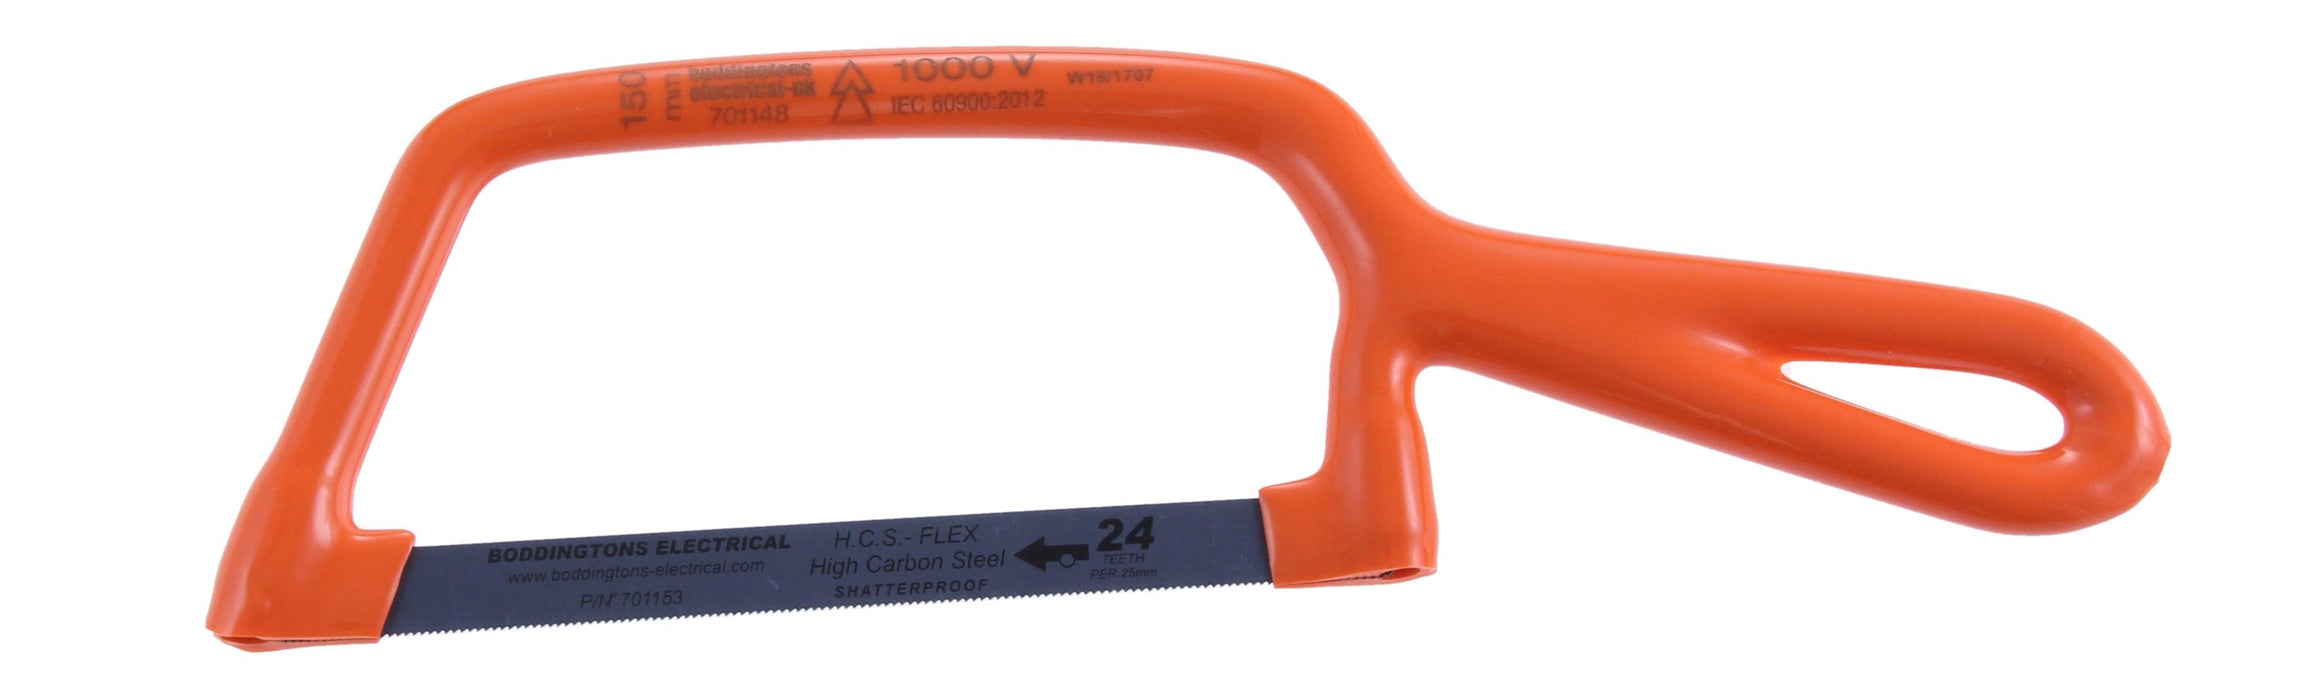 Boddingtons Electrical Insulated Junior Hacksaw with a 24 TPI Blade, 150mm Blade Length 701148